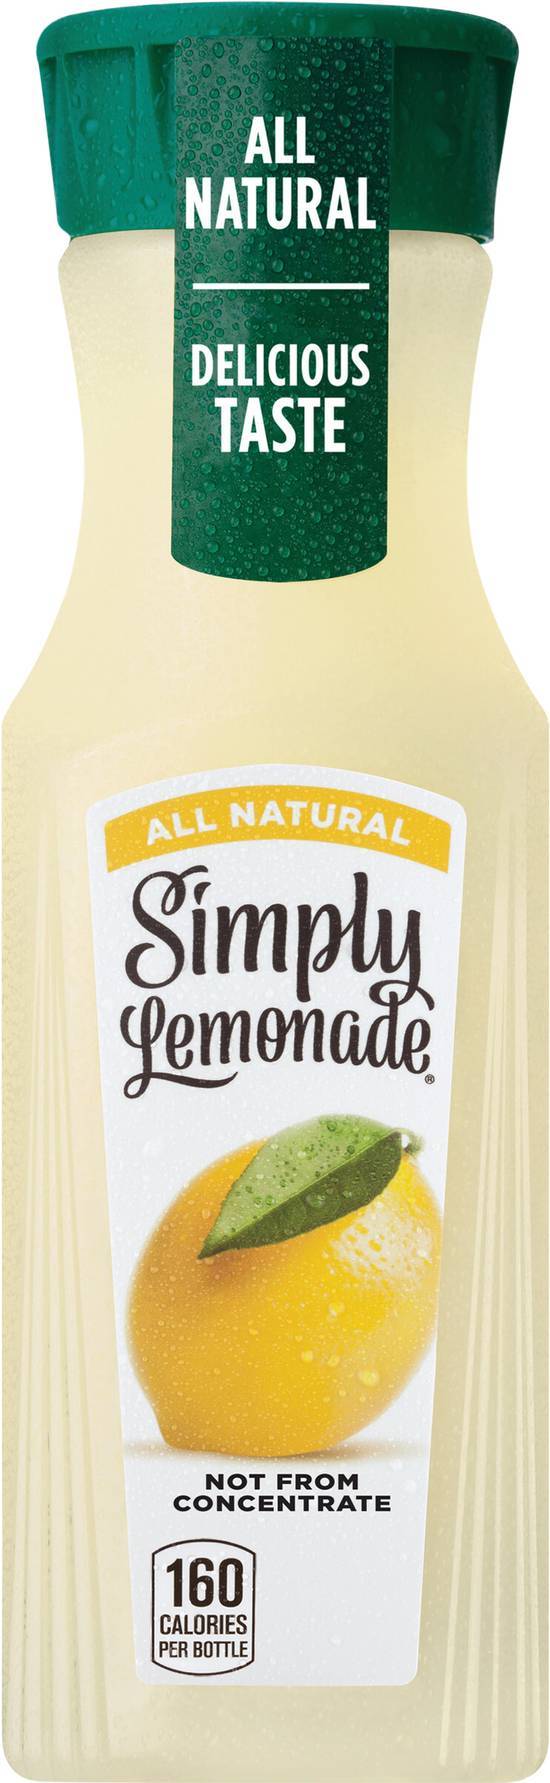 Simply All Natural Juice(Lemonade)(11.5Fl Oz)